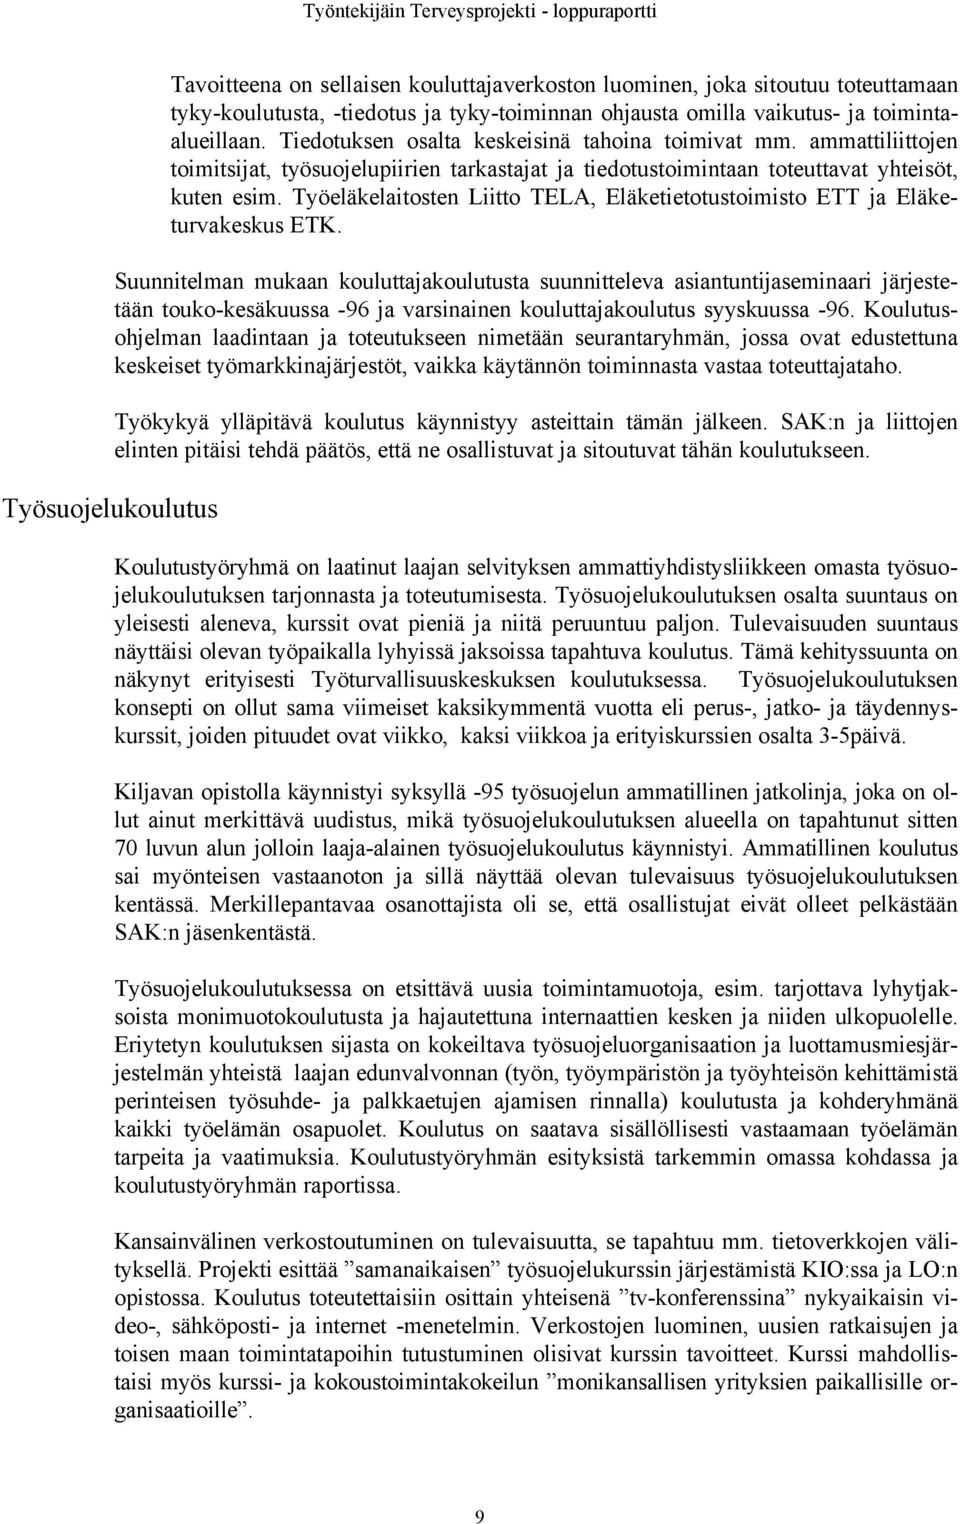 Työeläkelaitosten Liitto TELA, Eläketietotustoimisto ETT ja Eläketurvakeskus ETK.